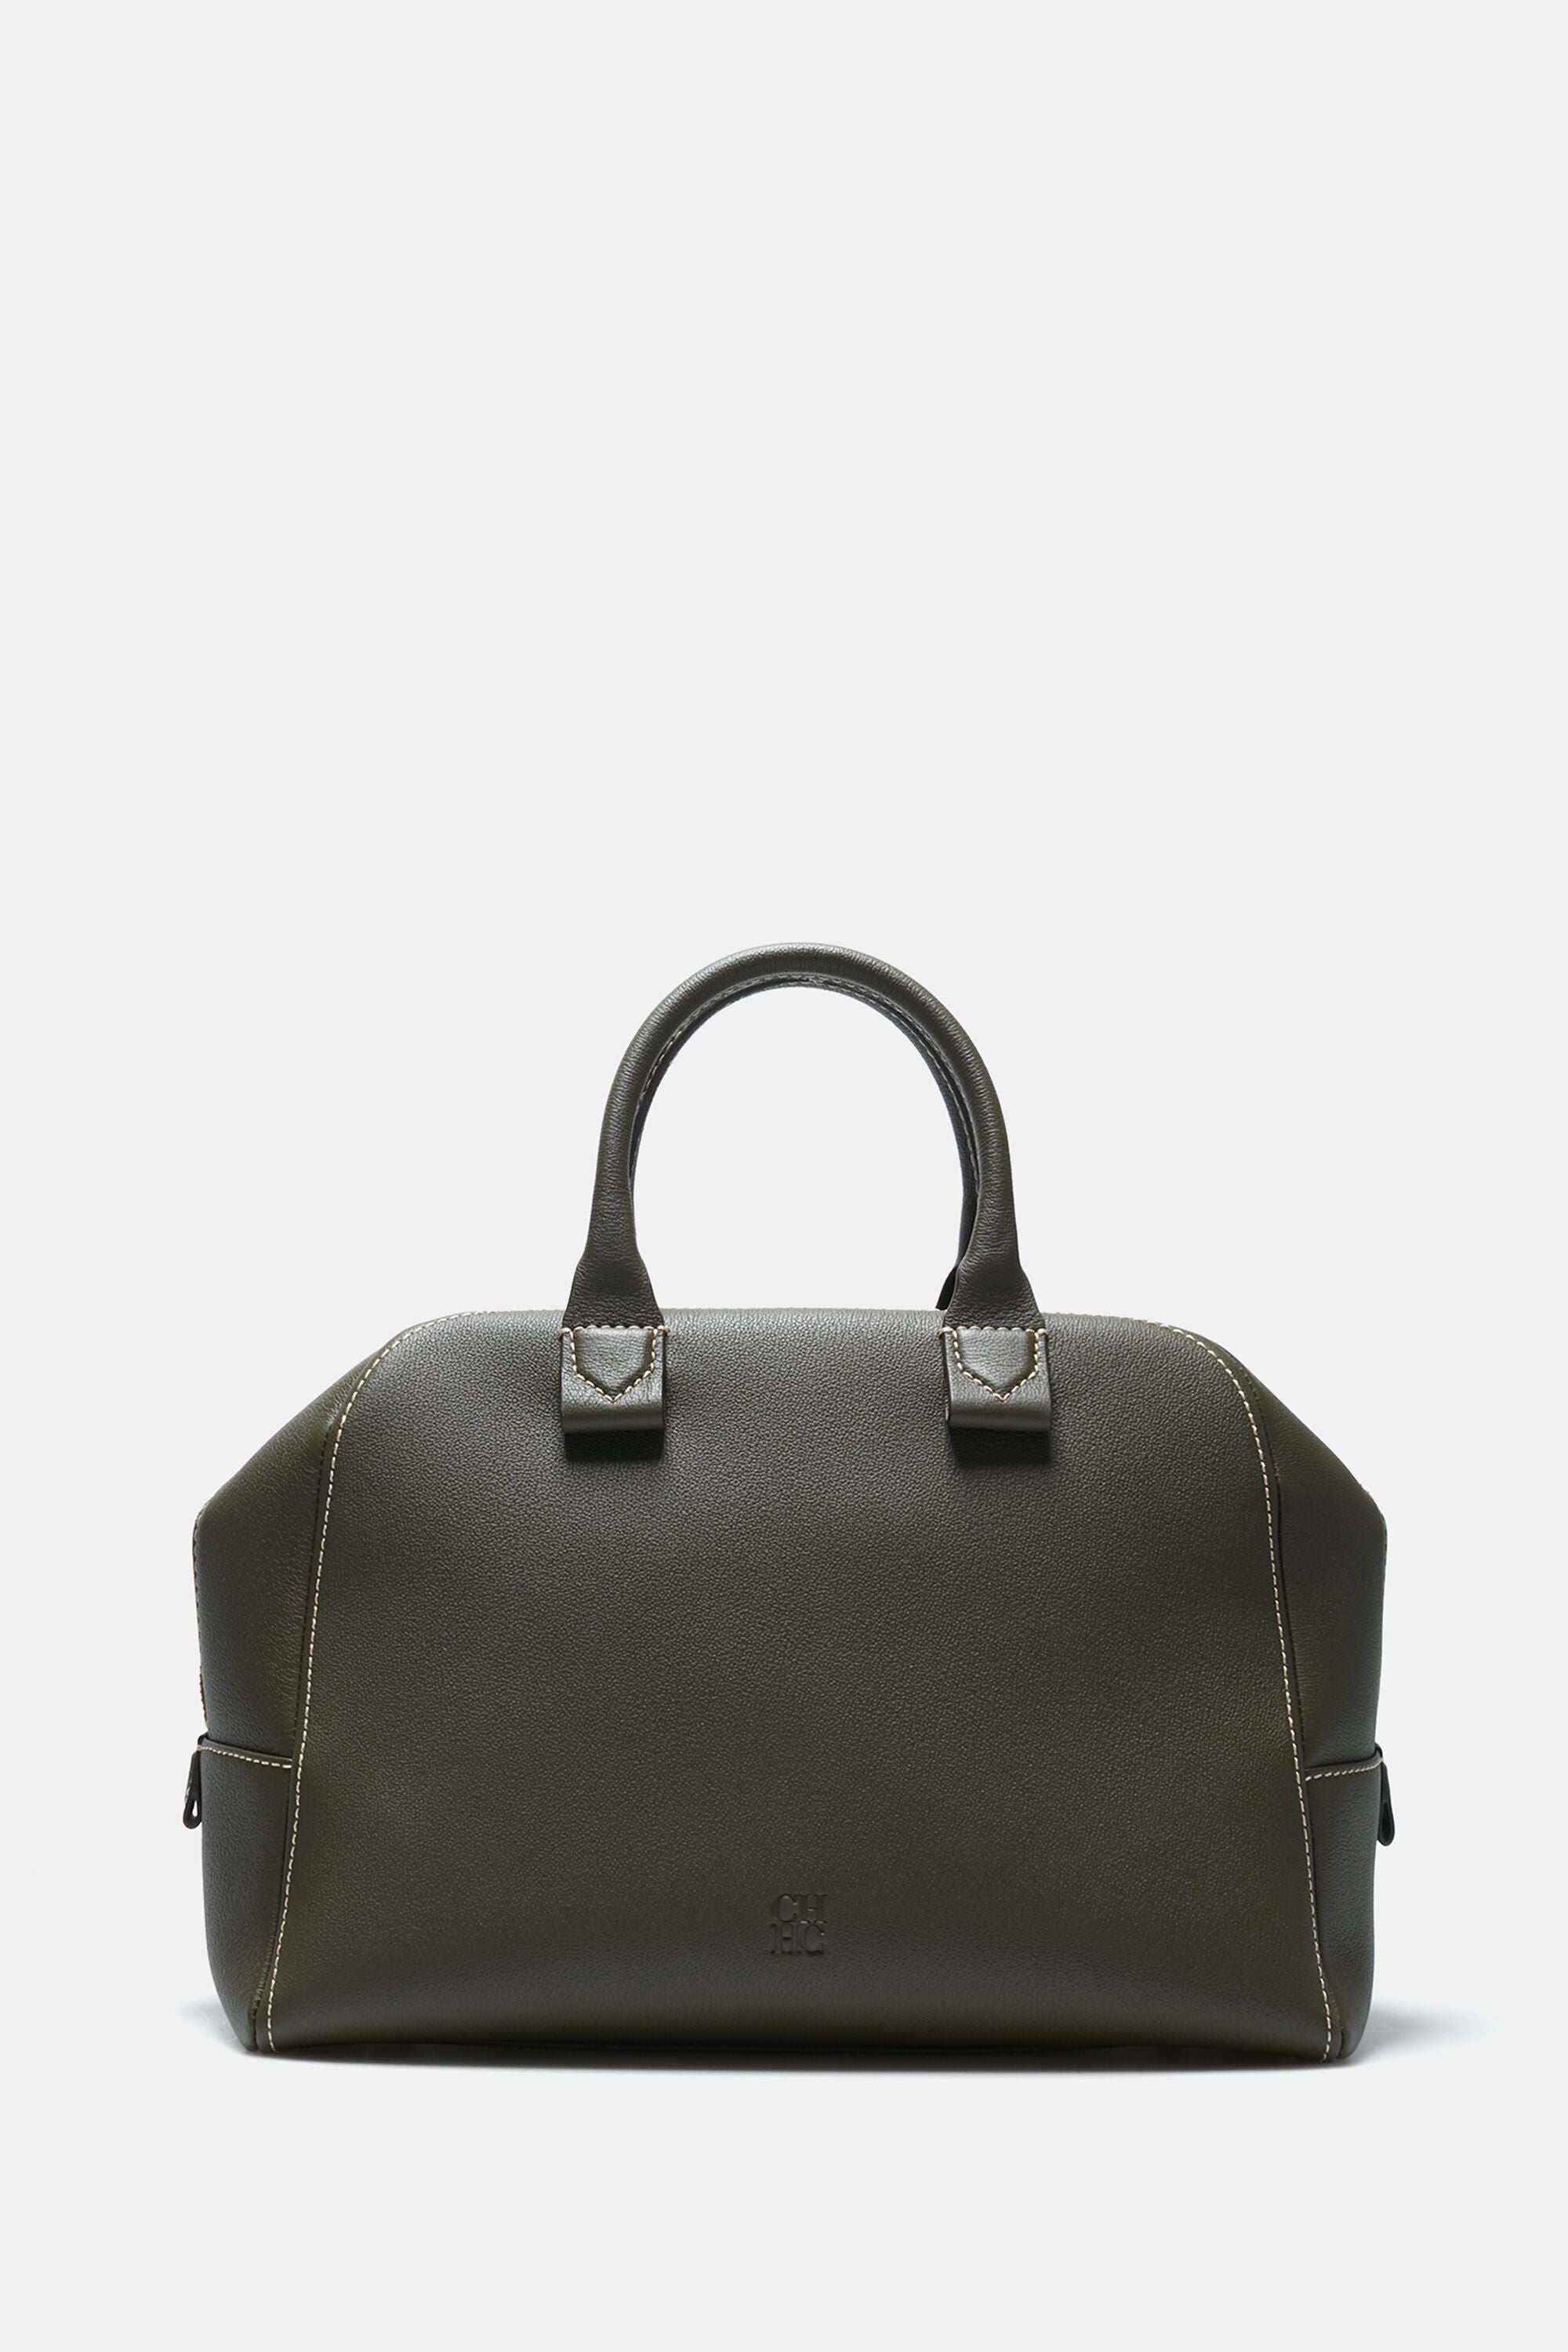 Blasón S | Medium handbag khaki - CH Carolina Herrera United States